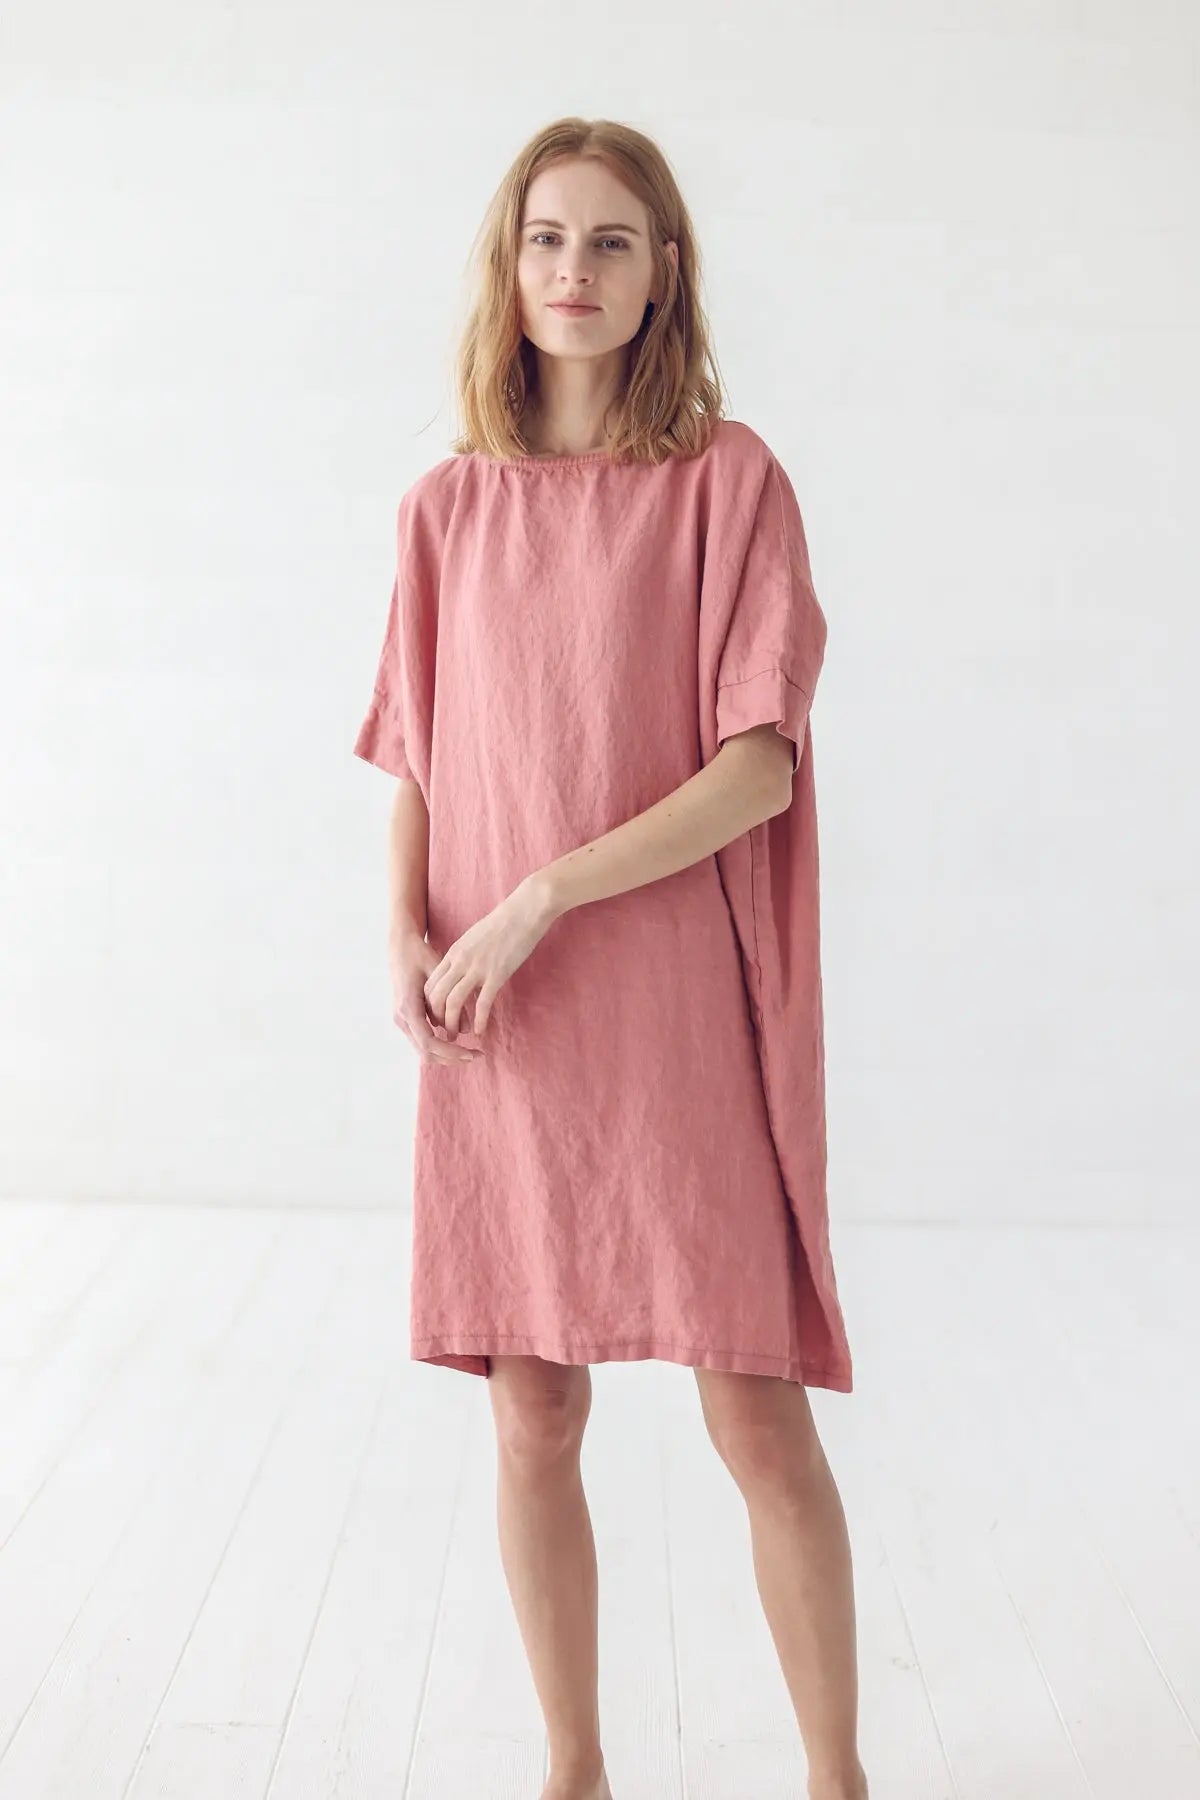 Coral Linen Dress - Epic Linen luxury linen